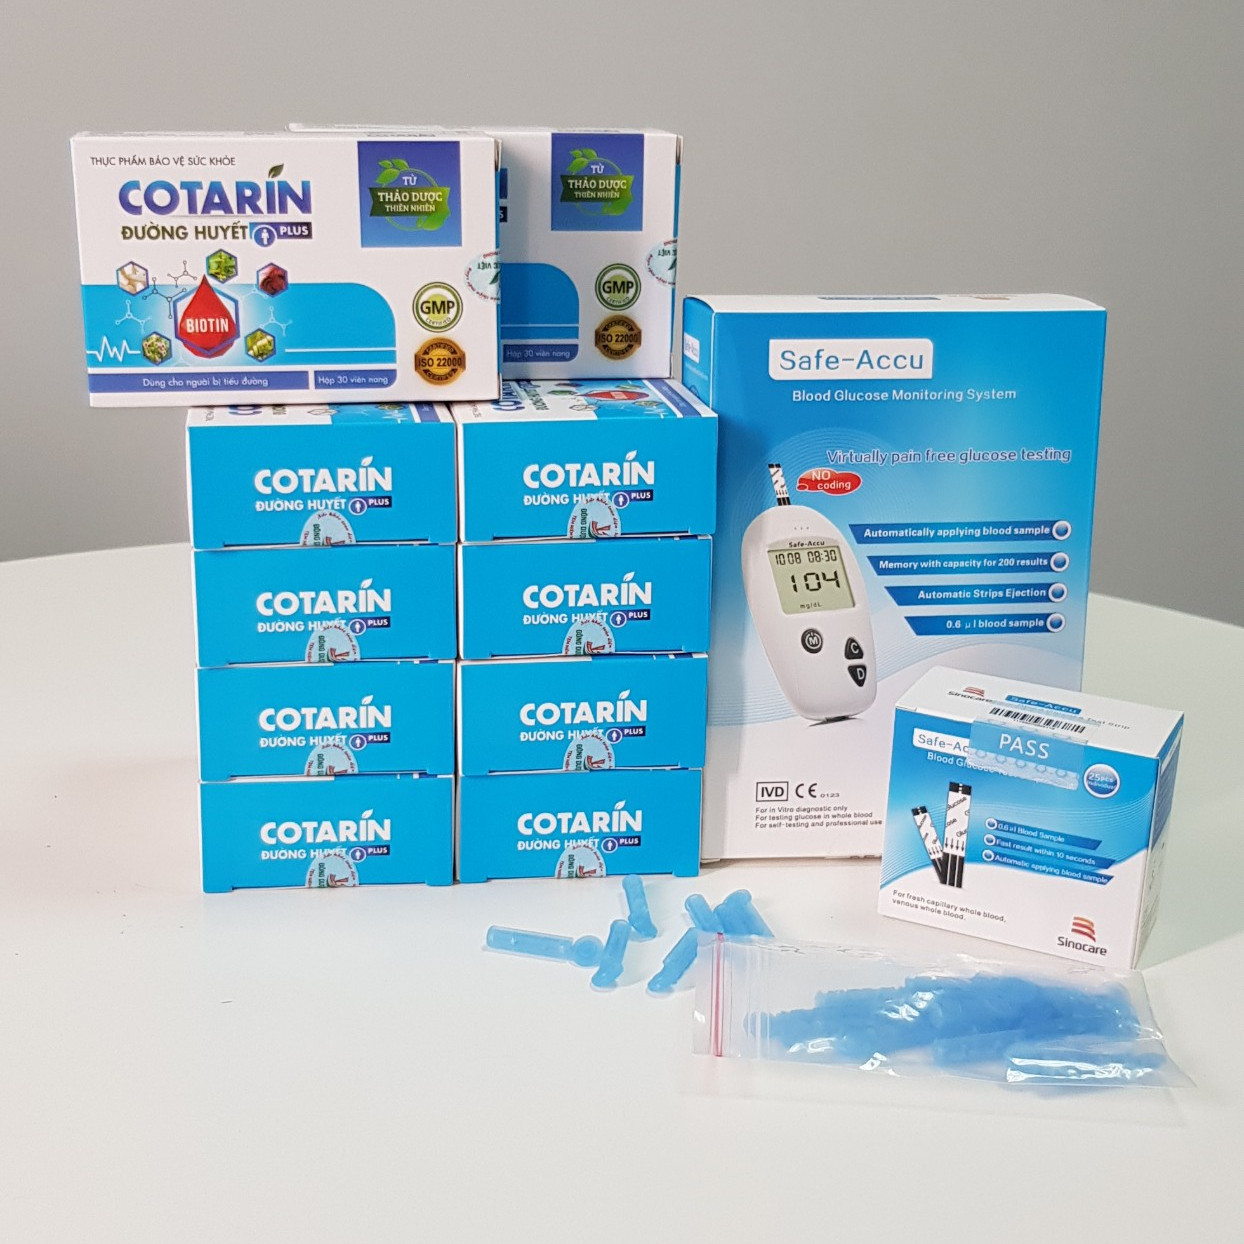 Compo 10 hộp Thực phẩm bảo vệ sức khỏe: COTARIN – HỖ TRỢ BỆNH TIỂU ĐƯỜNG TYPE 2 – Tặng 1 máy đo đường huyết Safe-Accu chính hãng của Đức